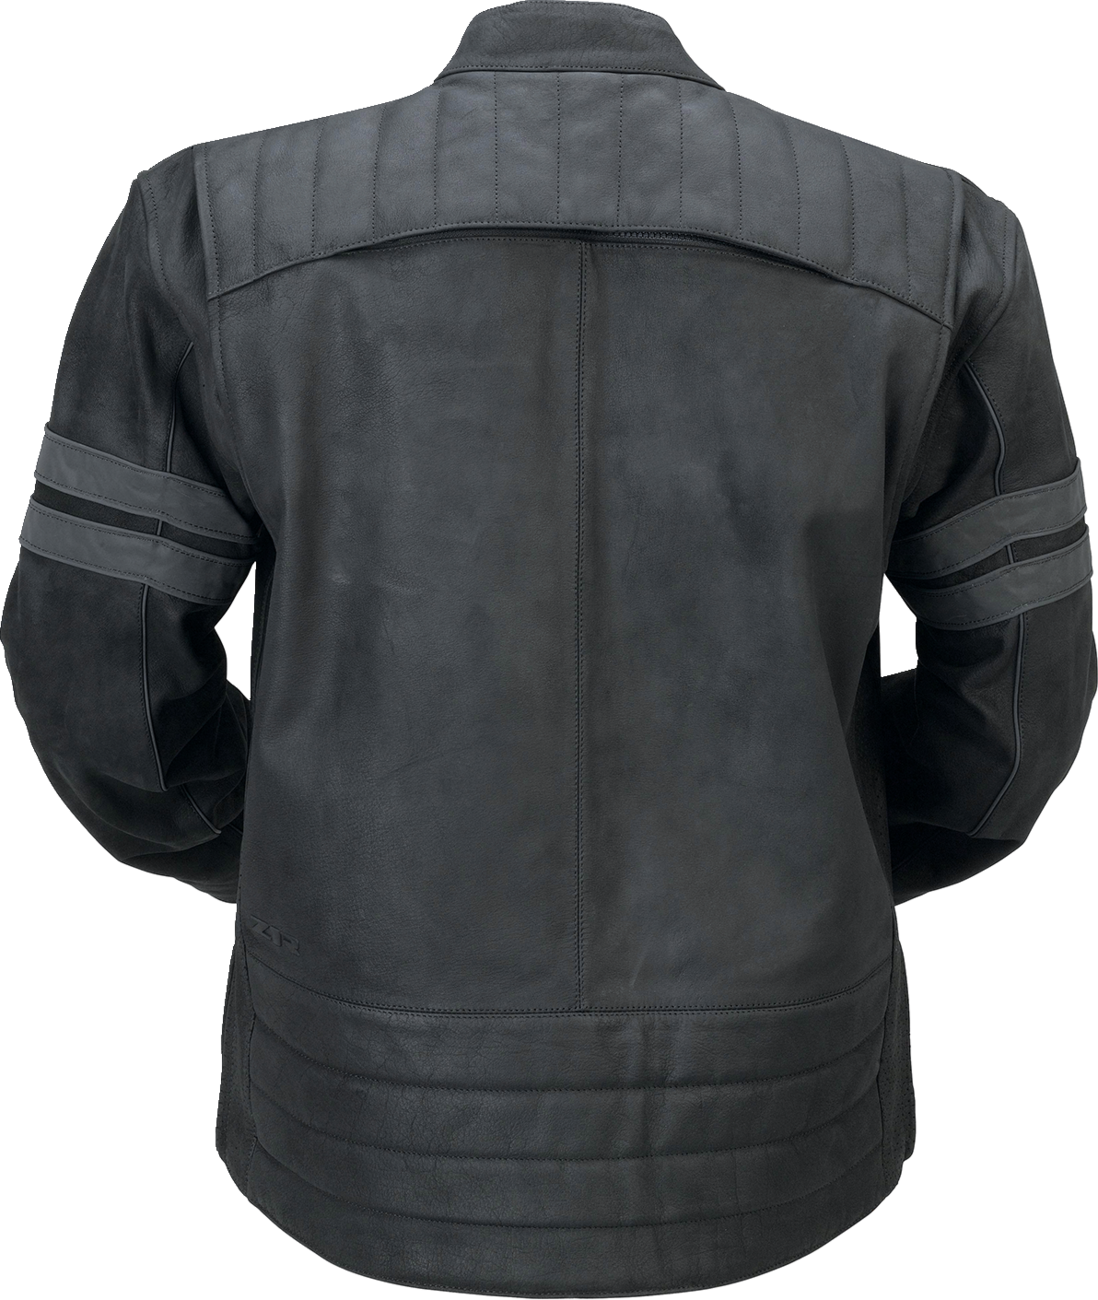 Z1R Remedy Leather Jacket - Black - 2XL 2810-3893